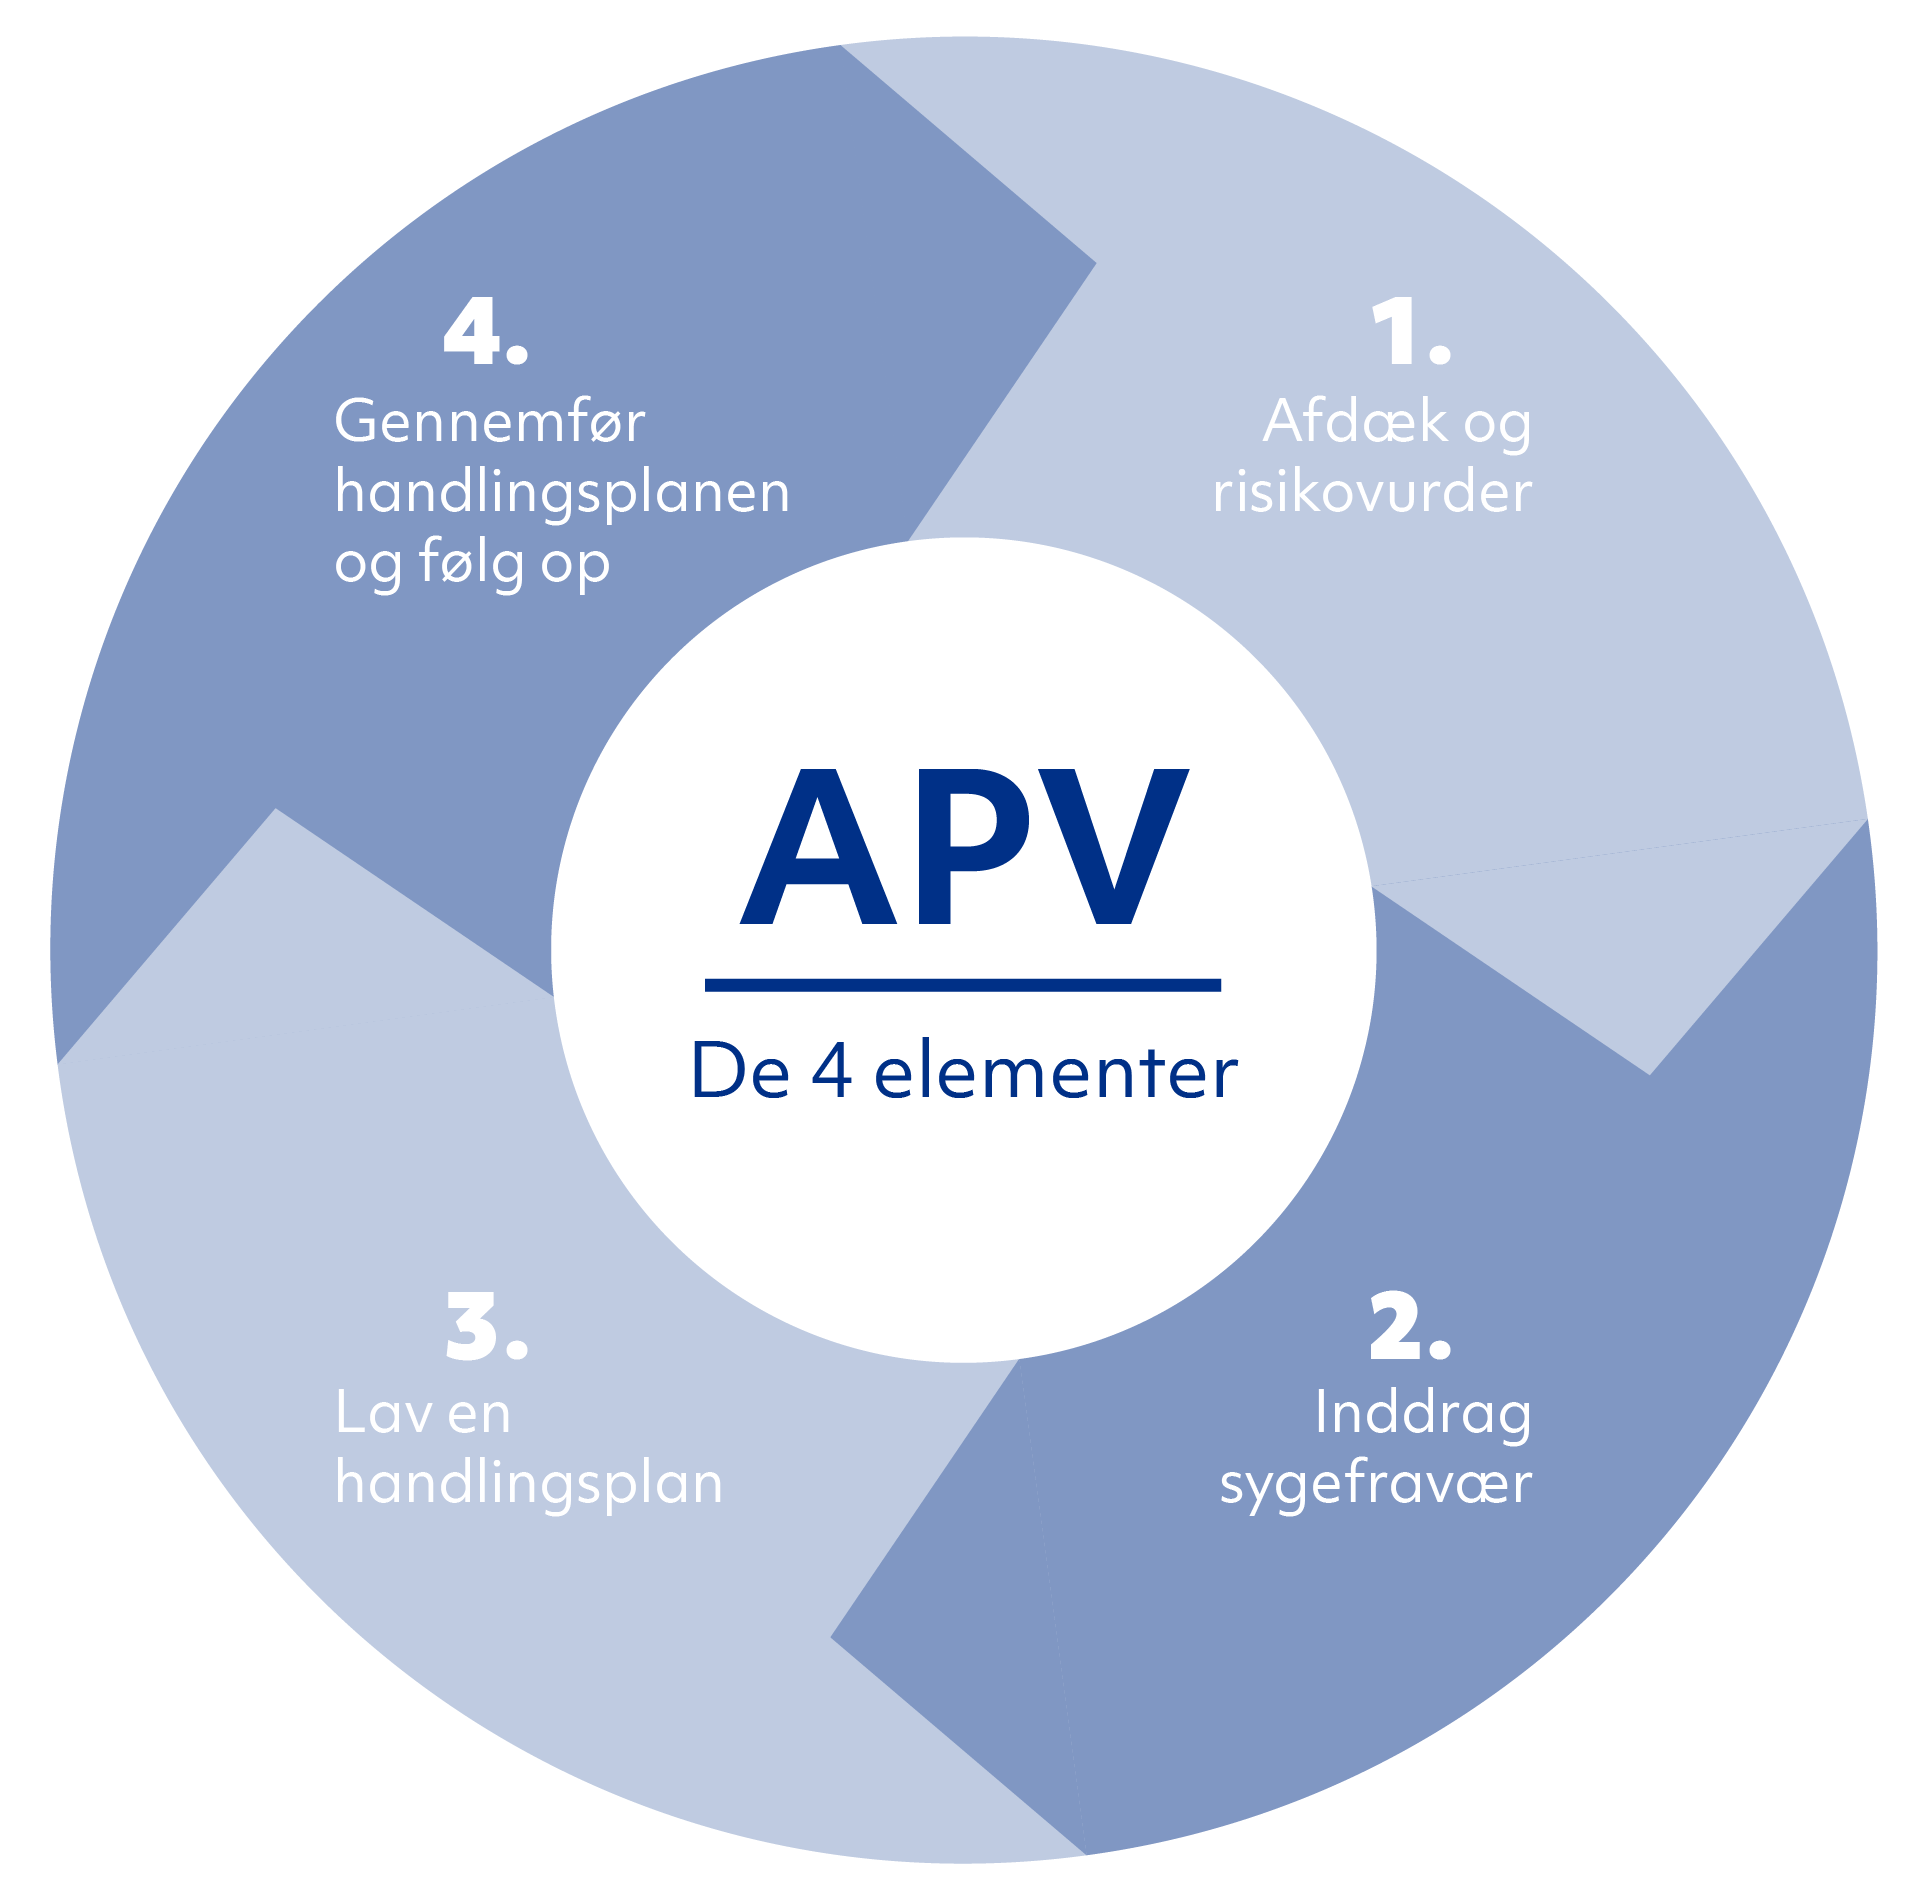 APV - De 4 elementer. 1 Afdæk og rissikovurdér, 2 Inddrag sygefravær, 3 Lav en handlingsplan, 4 Gennemfør handlingsplanen og følg op